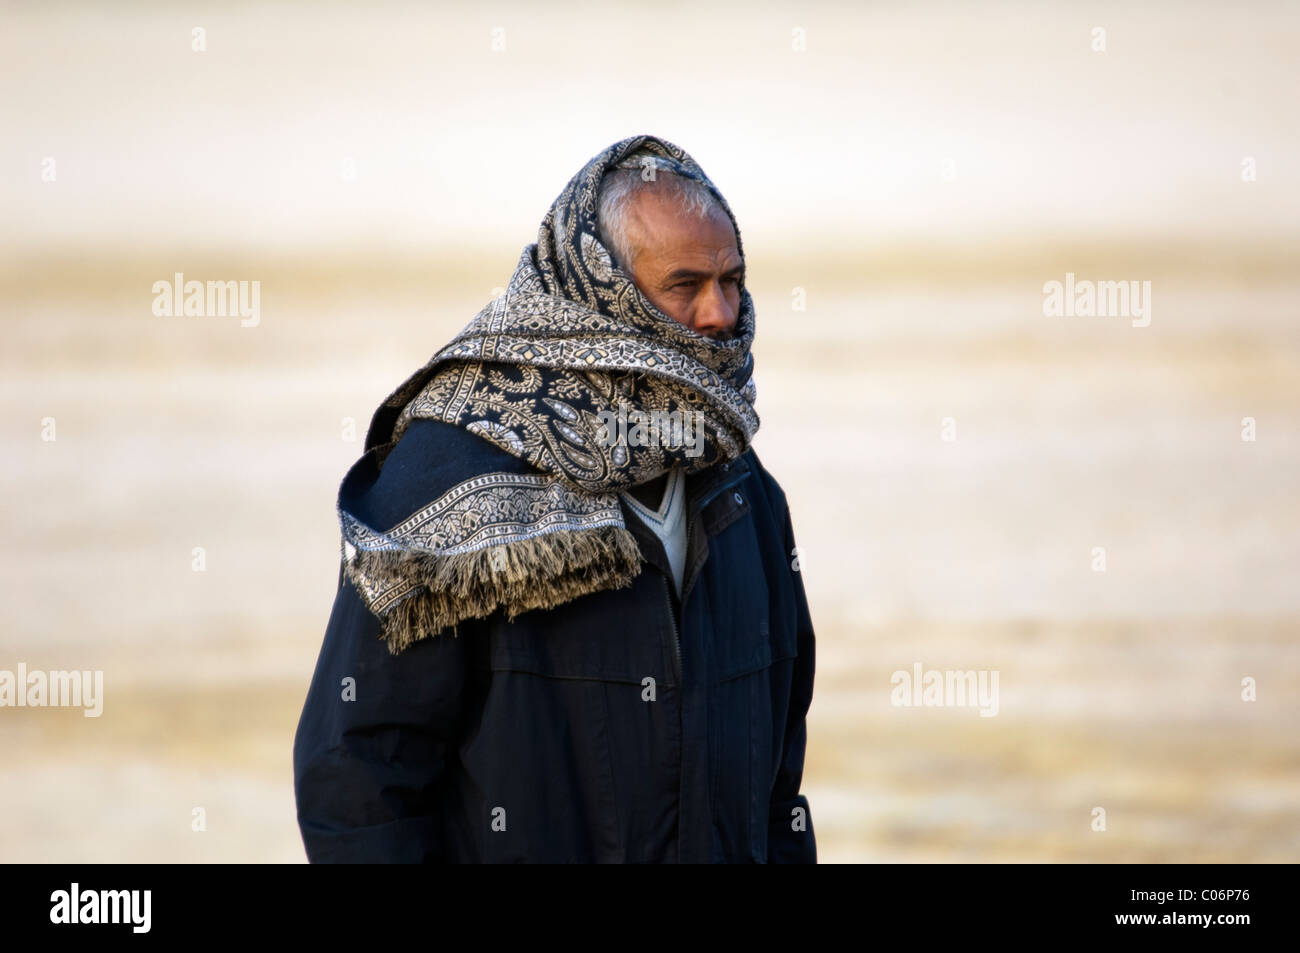 L'Homme égyptien couvert de foulard pour se protéger du froid Photo Stock -  Alamy